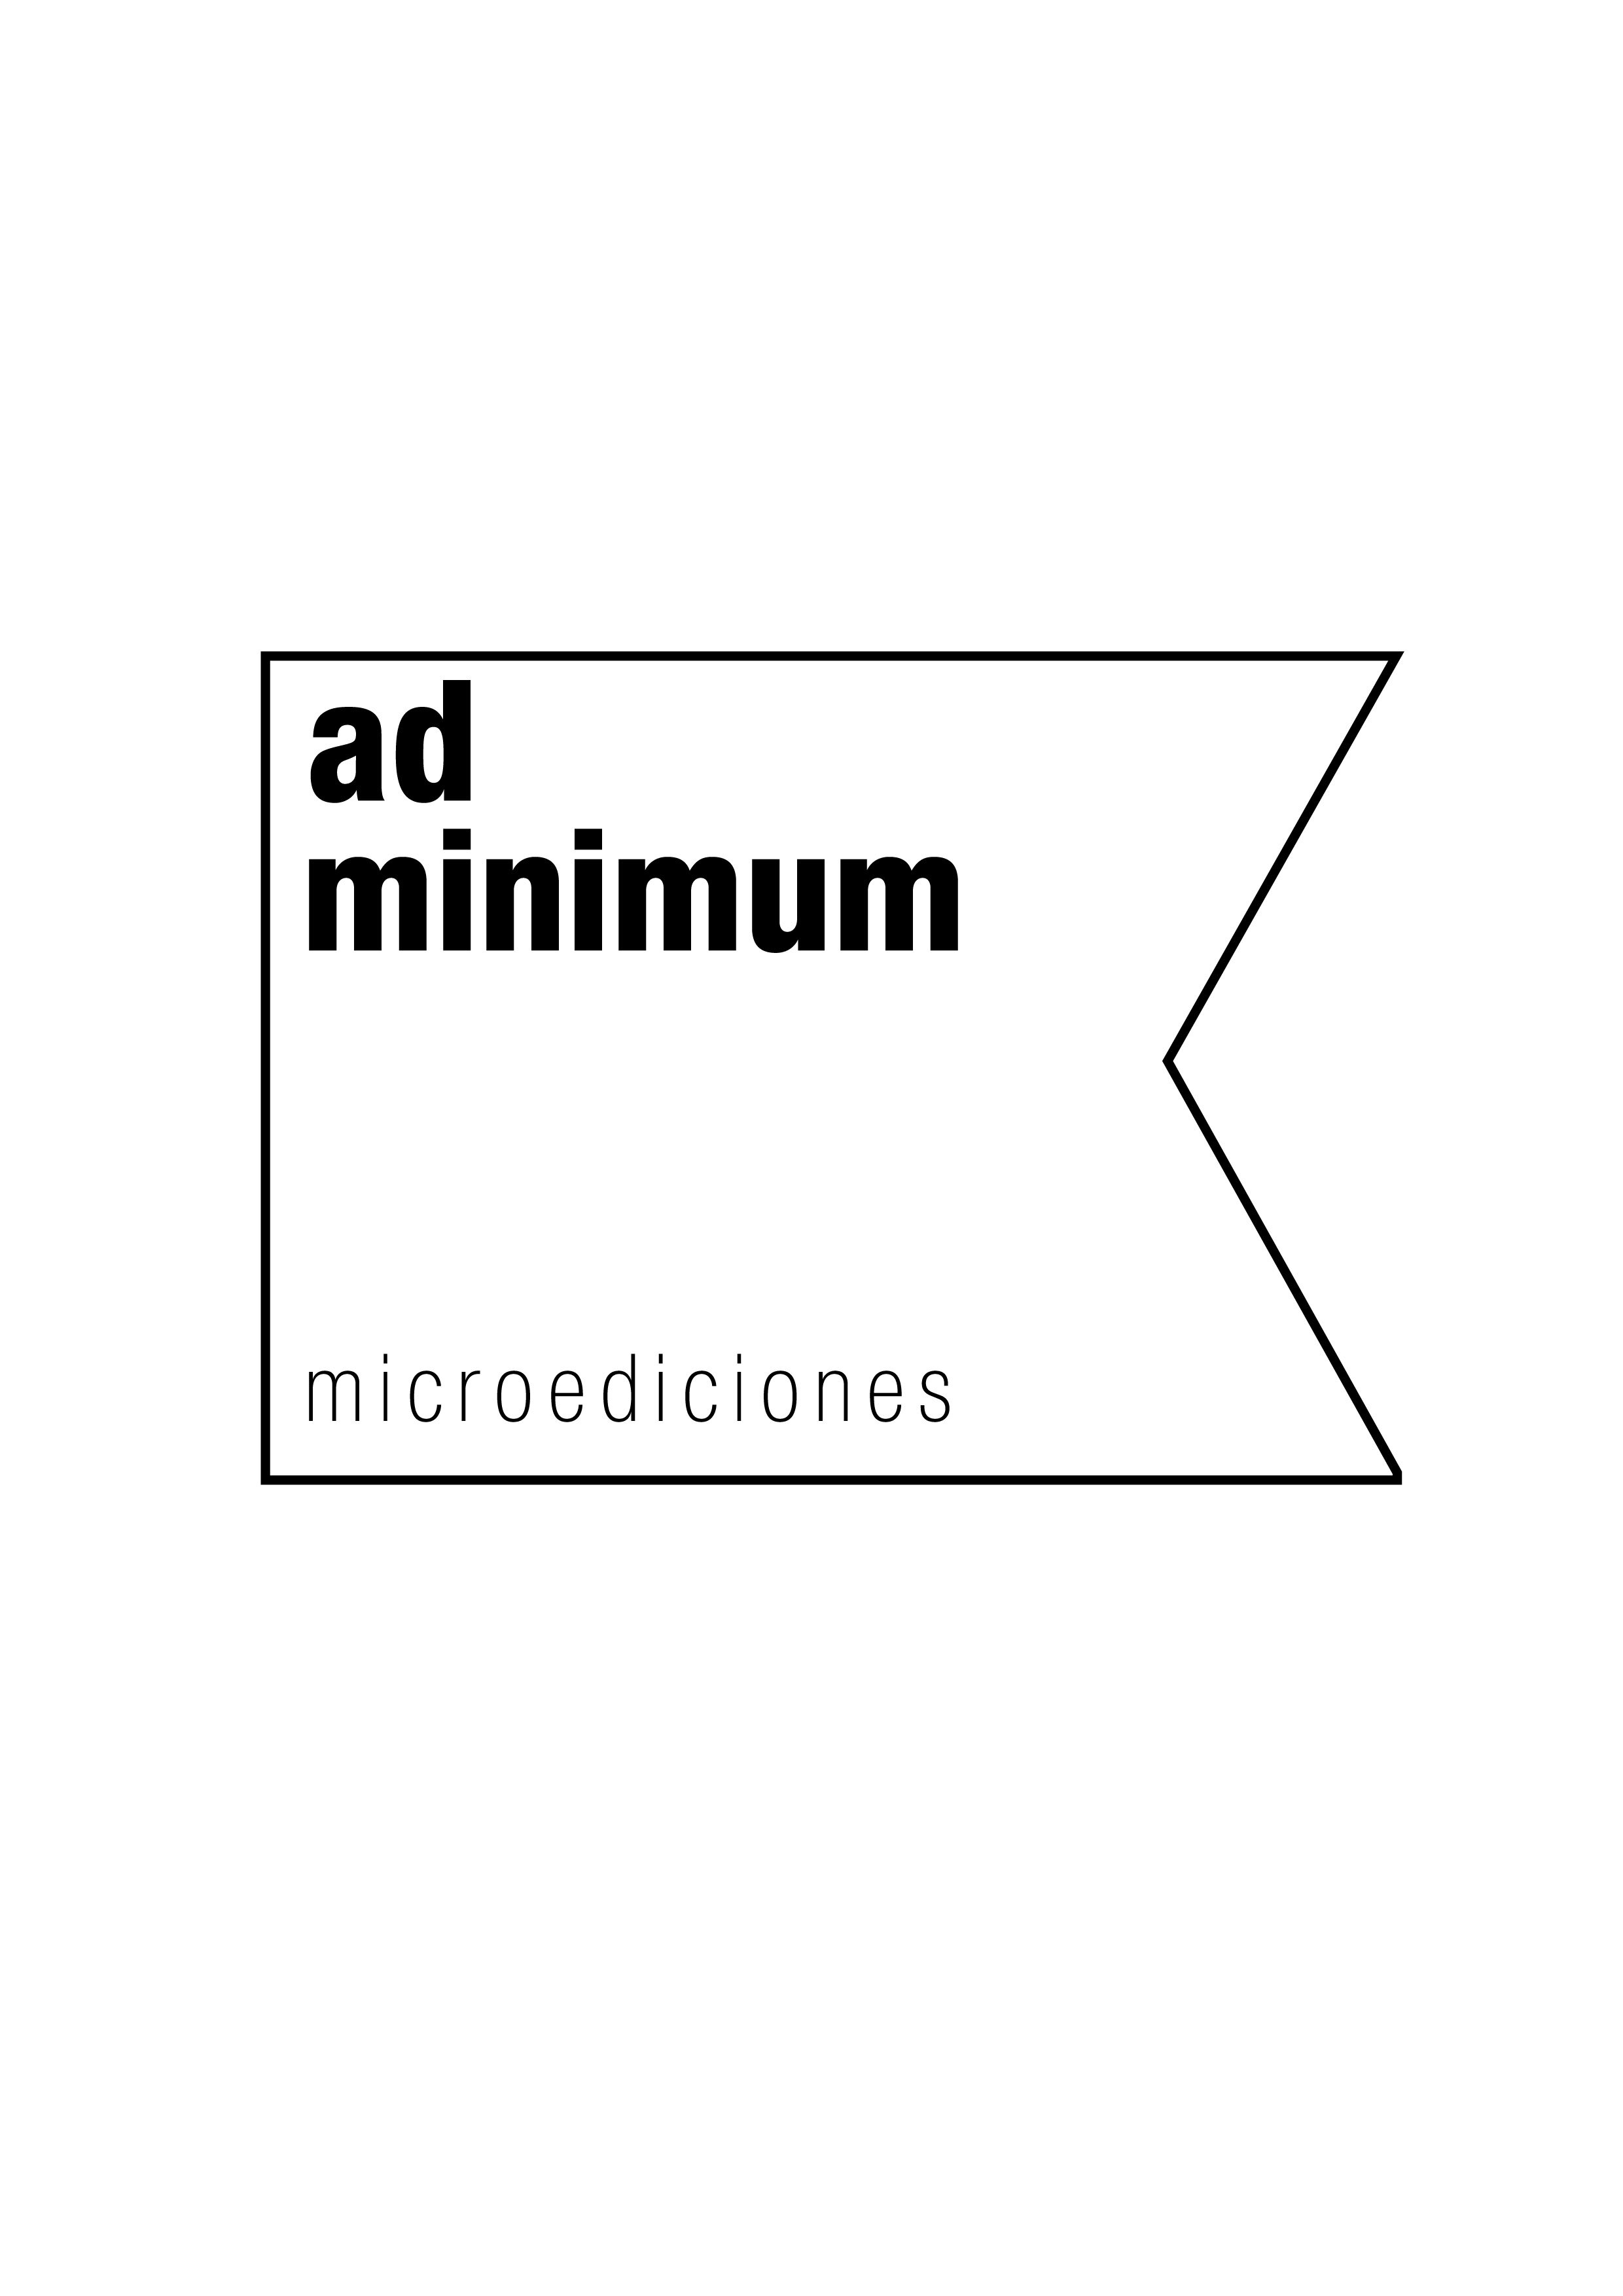 ad minimum microediciones